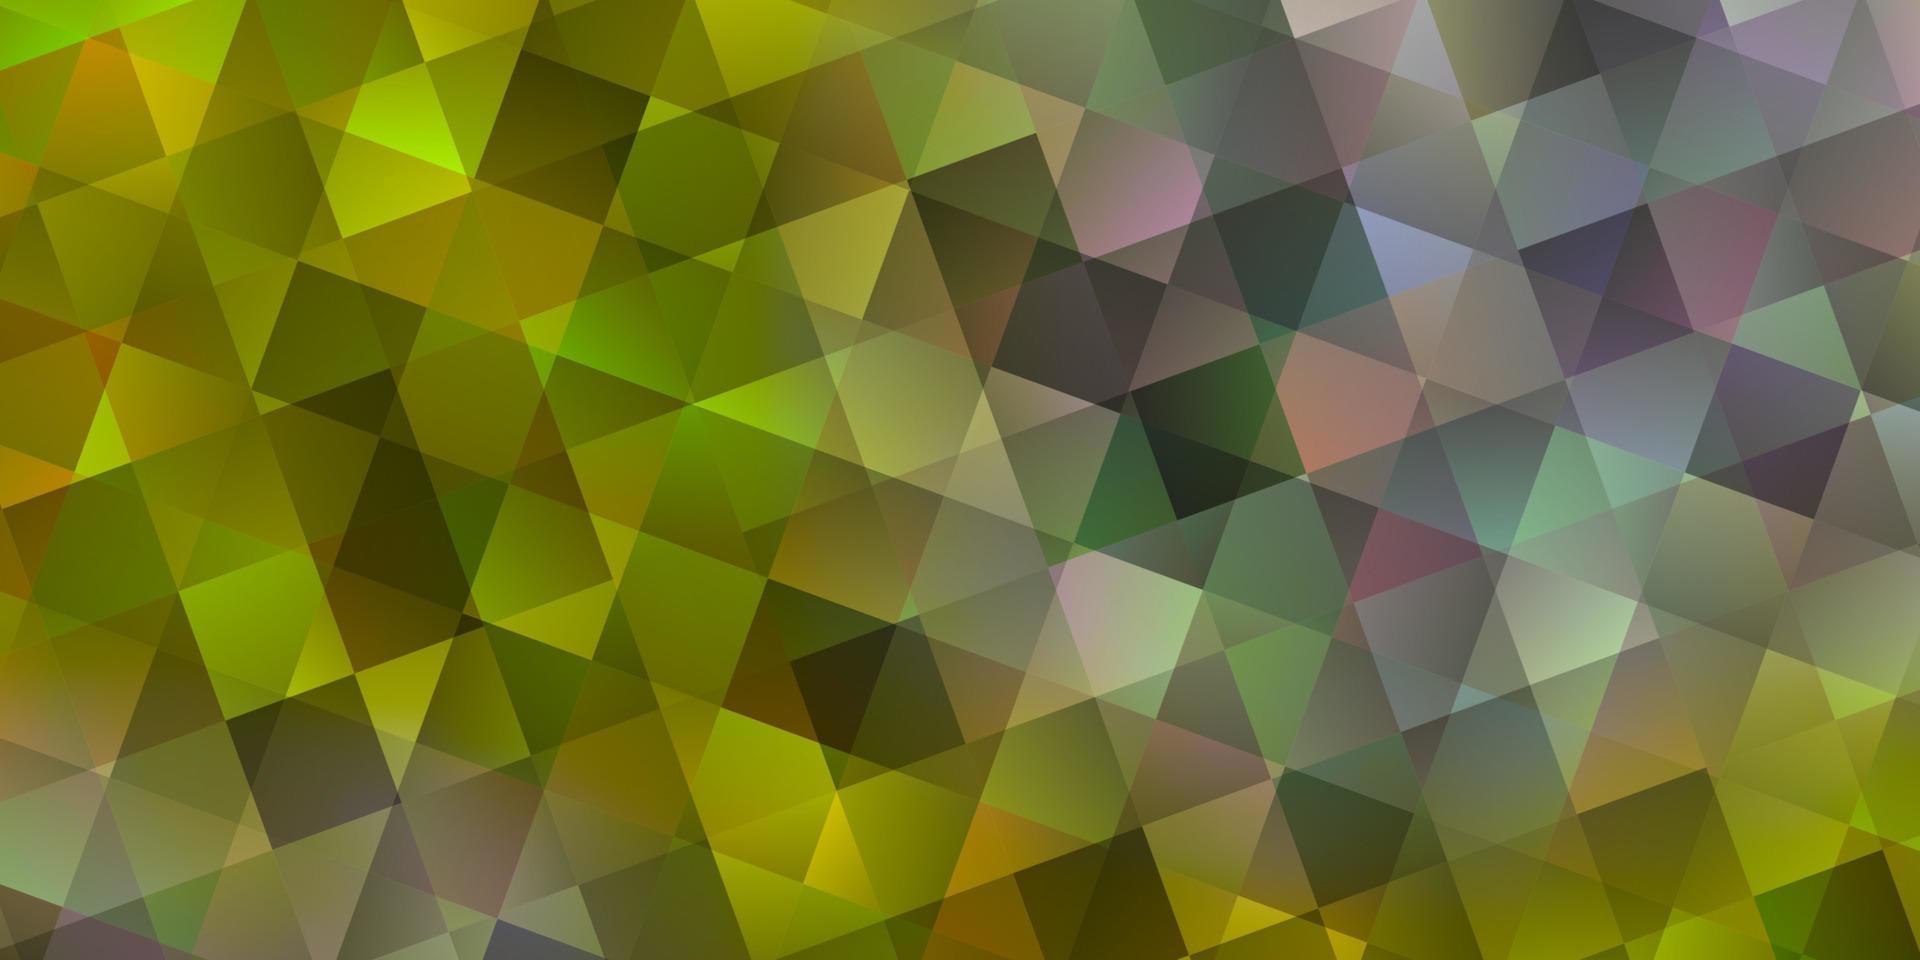 padrão de vetor amarelo claro com estilo poligonal com cubos.